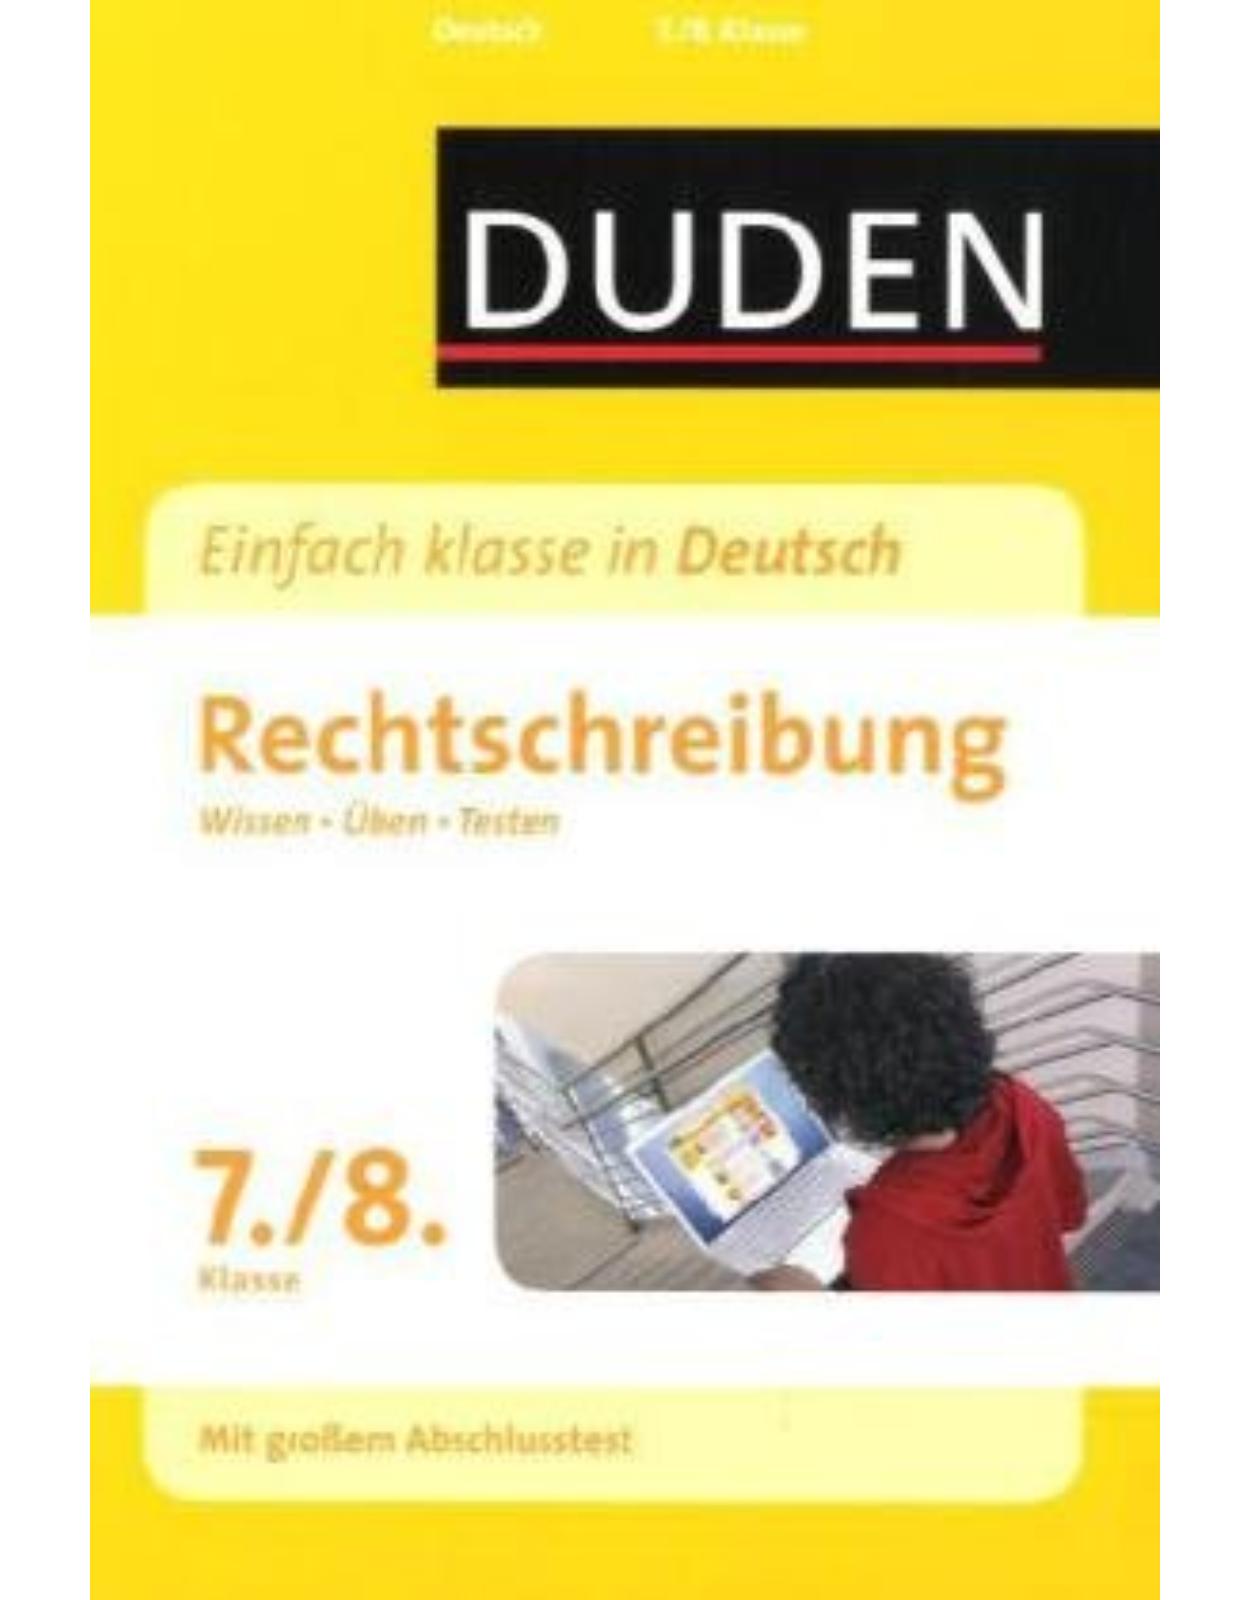 Duden - Einfach klasse in Deutsch. Rechtschreibung 7./8. Klasse: Wissen - Üben - Testen